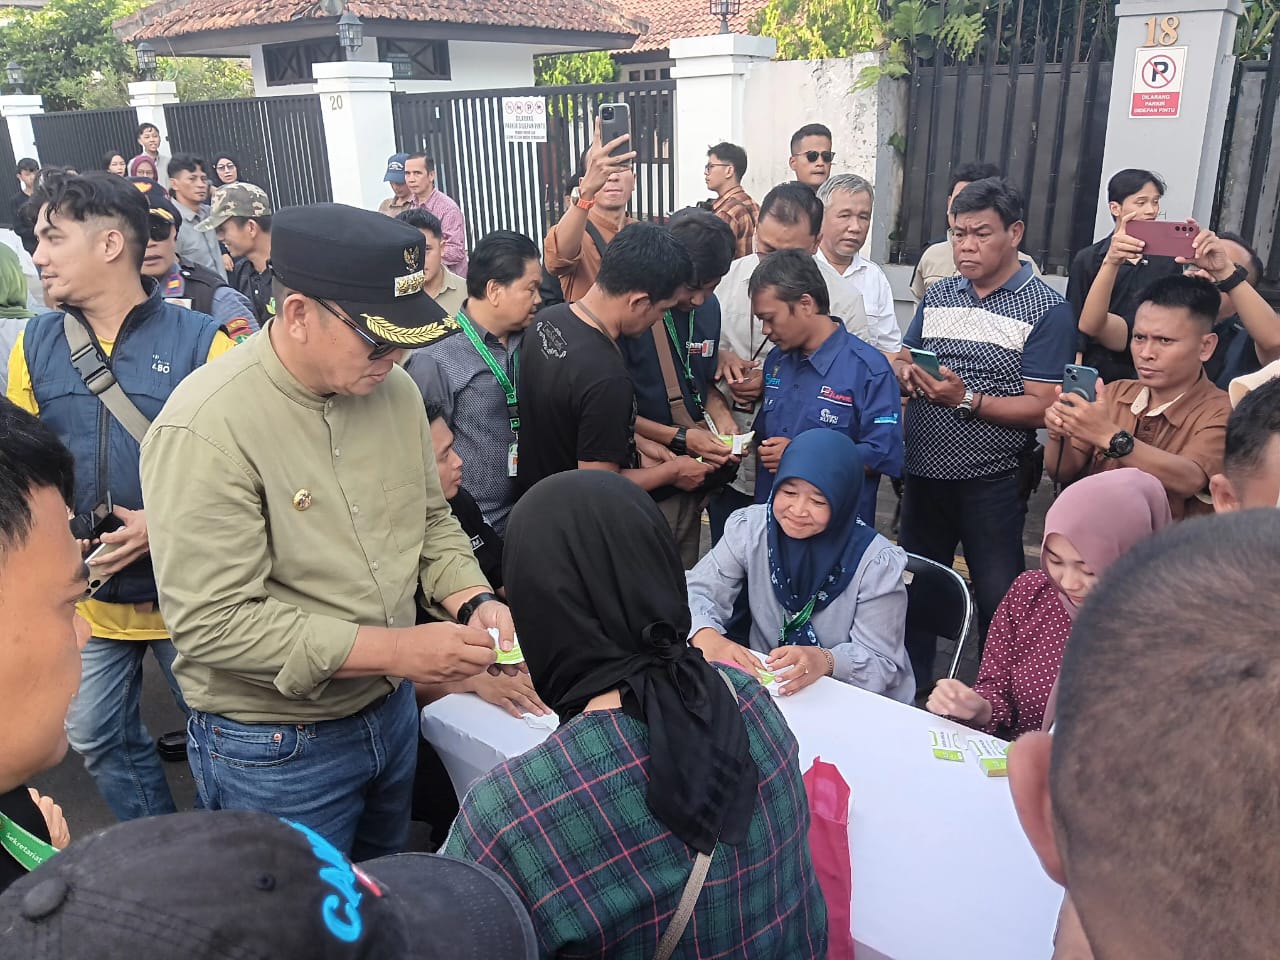 PENINJAUAN: Pj Walikota Sukabumi saat melakukan peninjauan jajanan gratis yang dipusatkan di Jalan R Syamsudin SH, Kecamatan Cikole, Kota Sukabumi, Minggu (31/3).(FT: BAMBANG/RADARSUKABUMI)